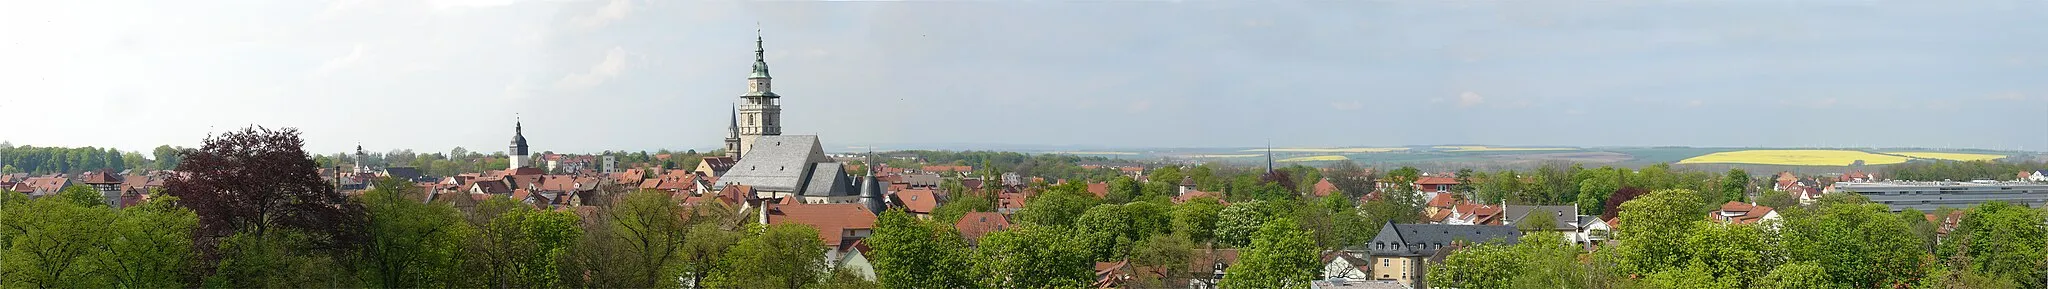 Image of Bad Langensalza